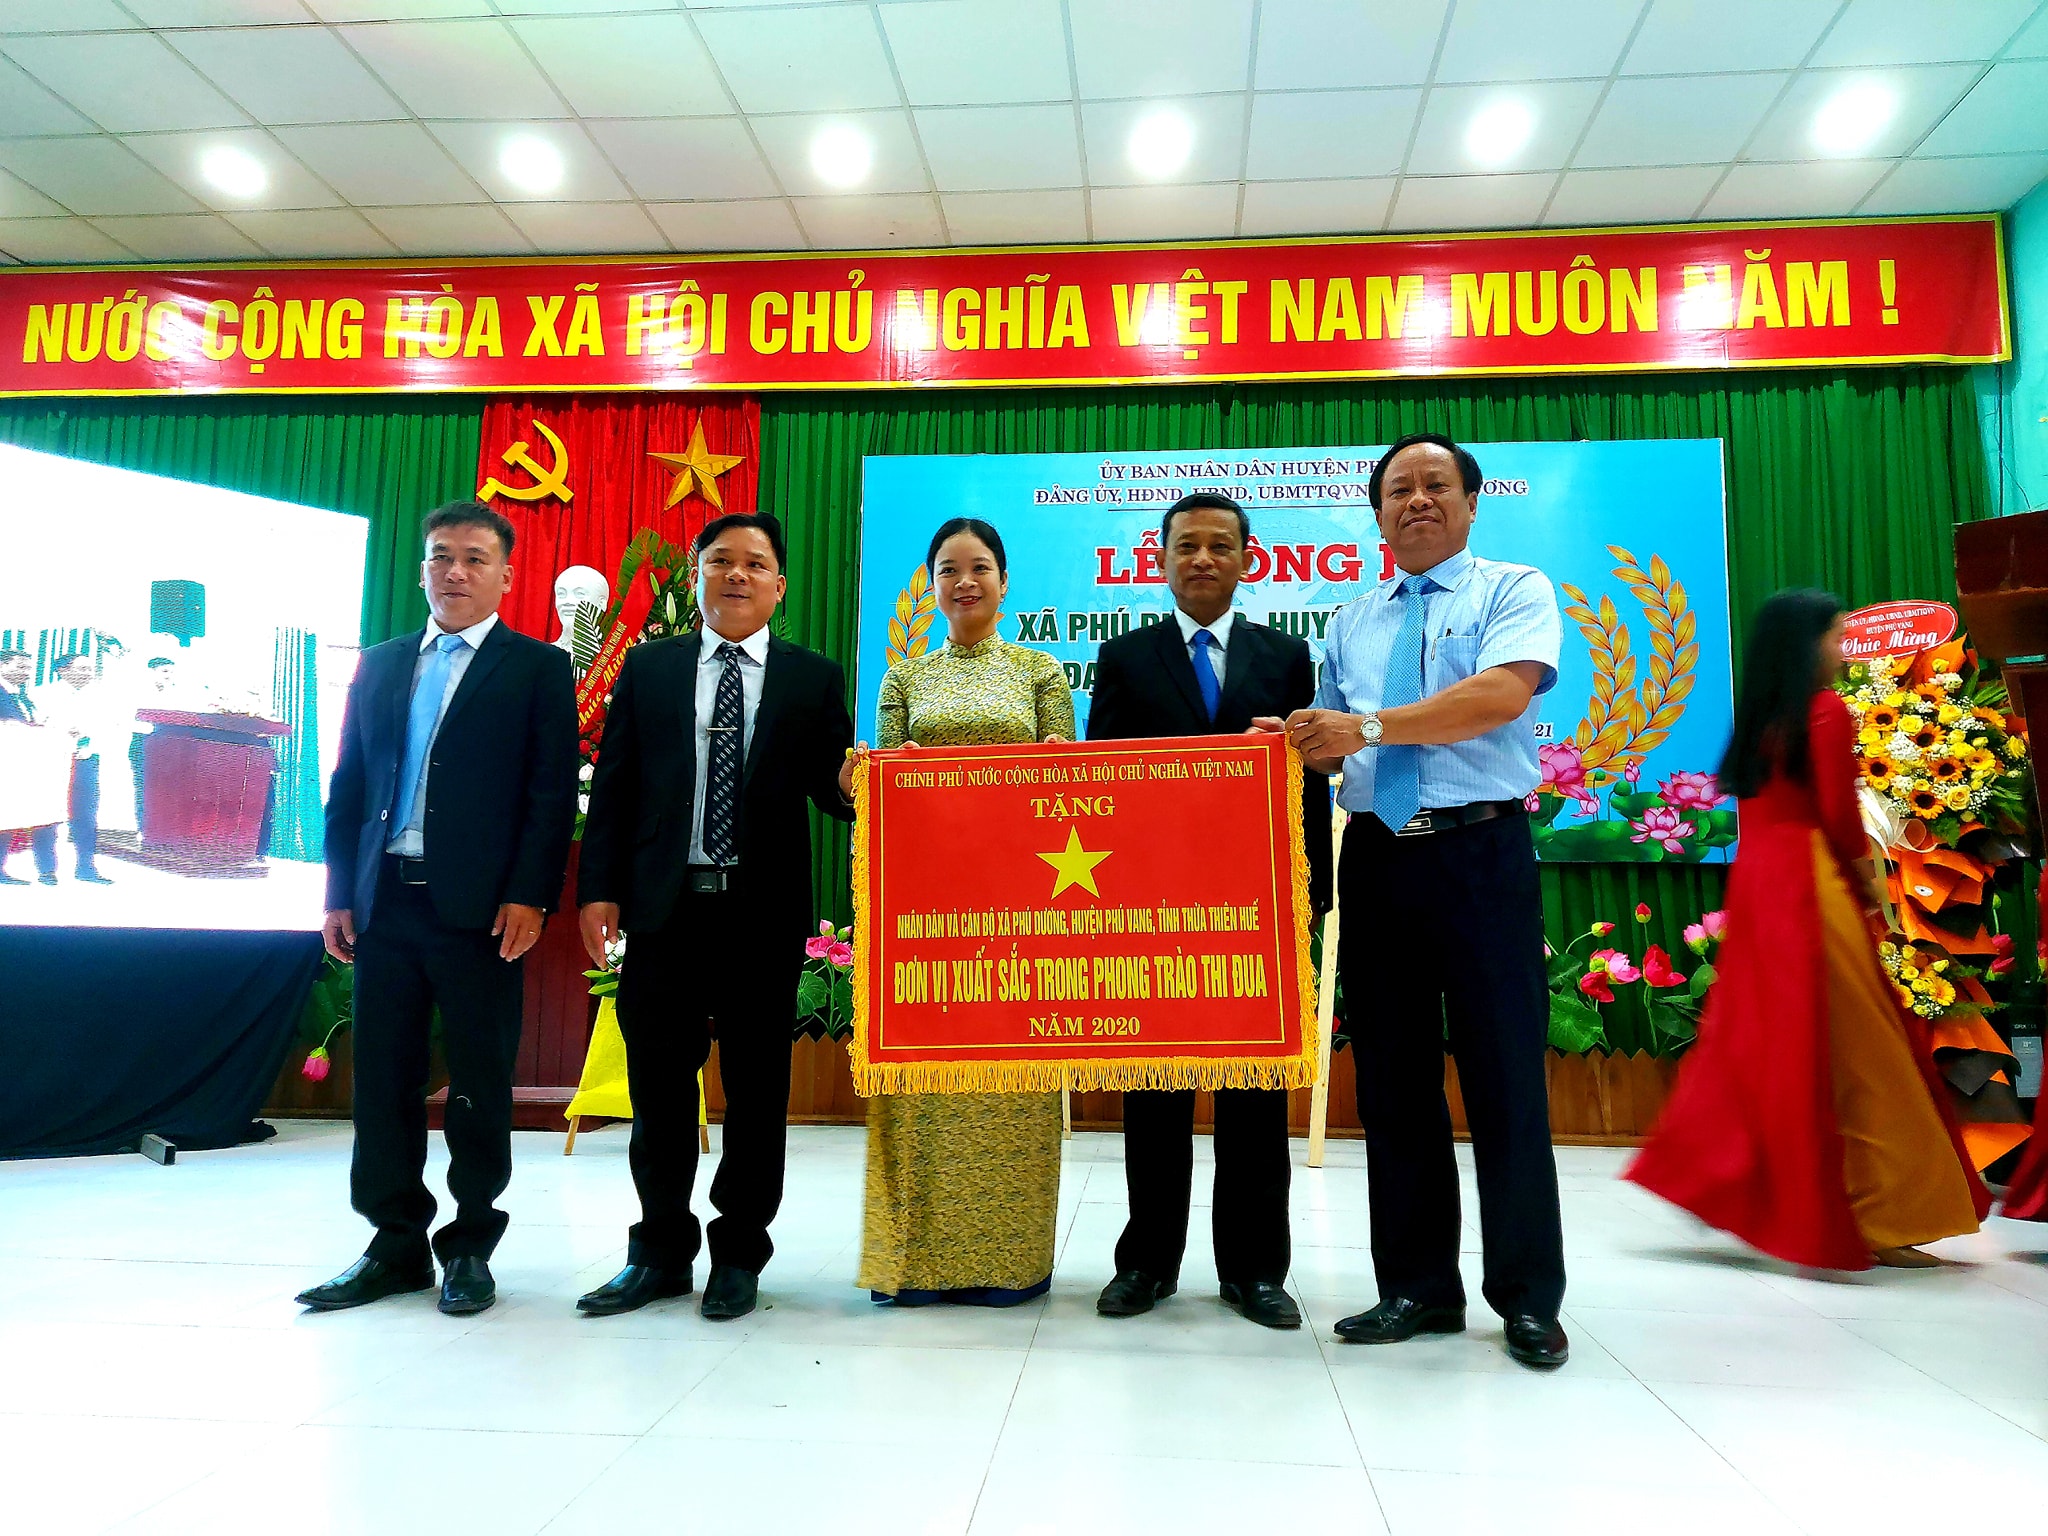 Trong dịp này, xã Phú Dương vinh dự đón nhận cờ thi đua của Thủ tướng chính phủ tặng đơn vị xuất sắc phong trào thi đua năm 2020.